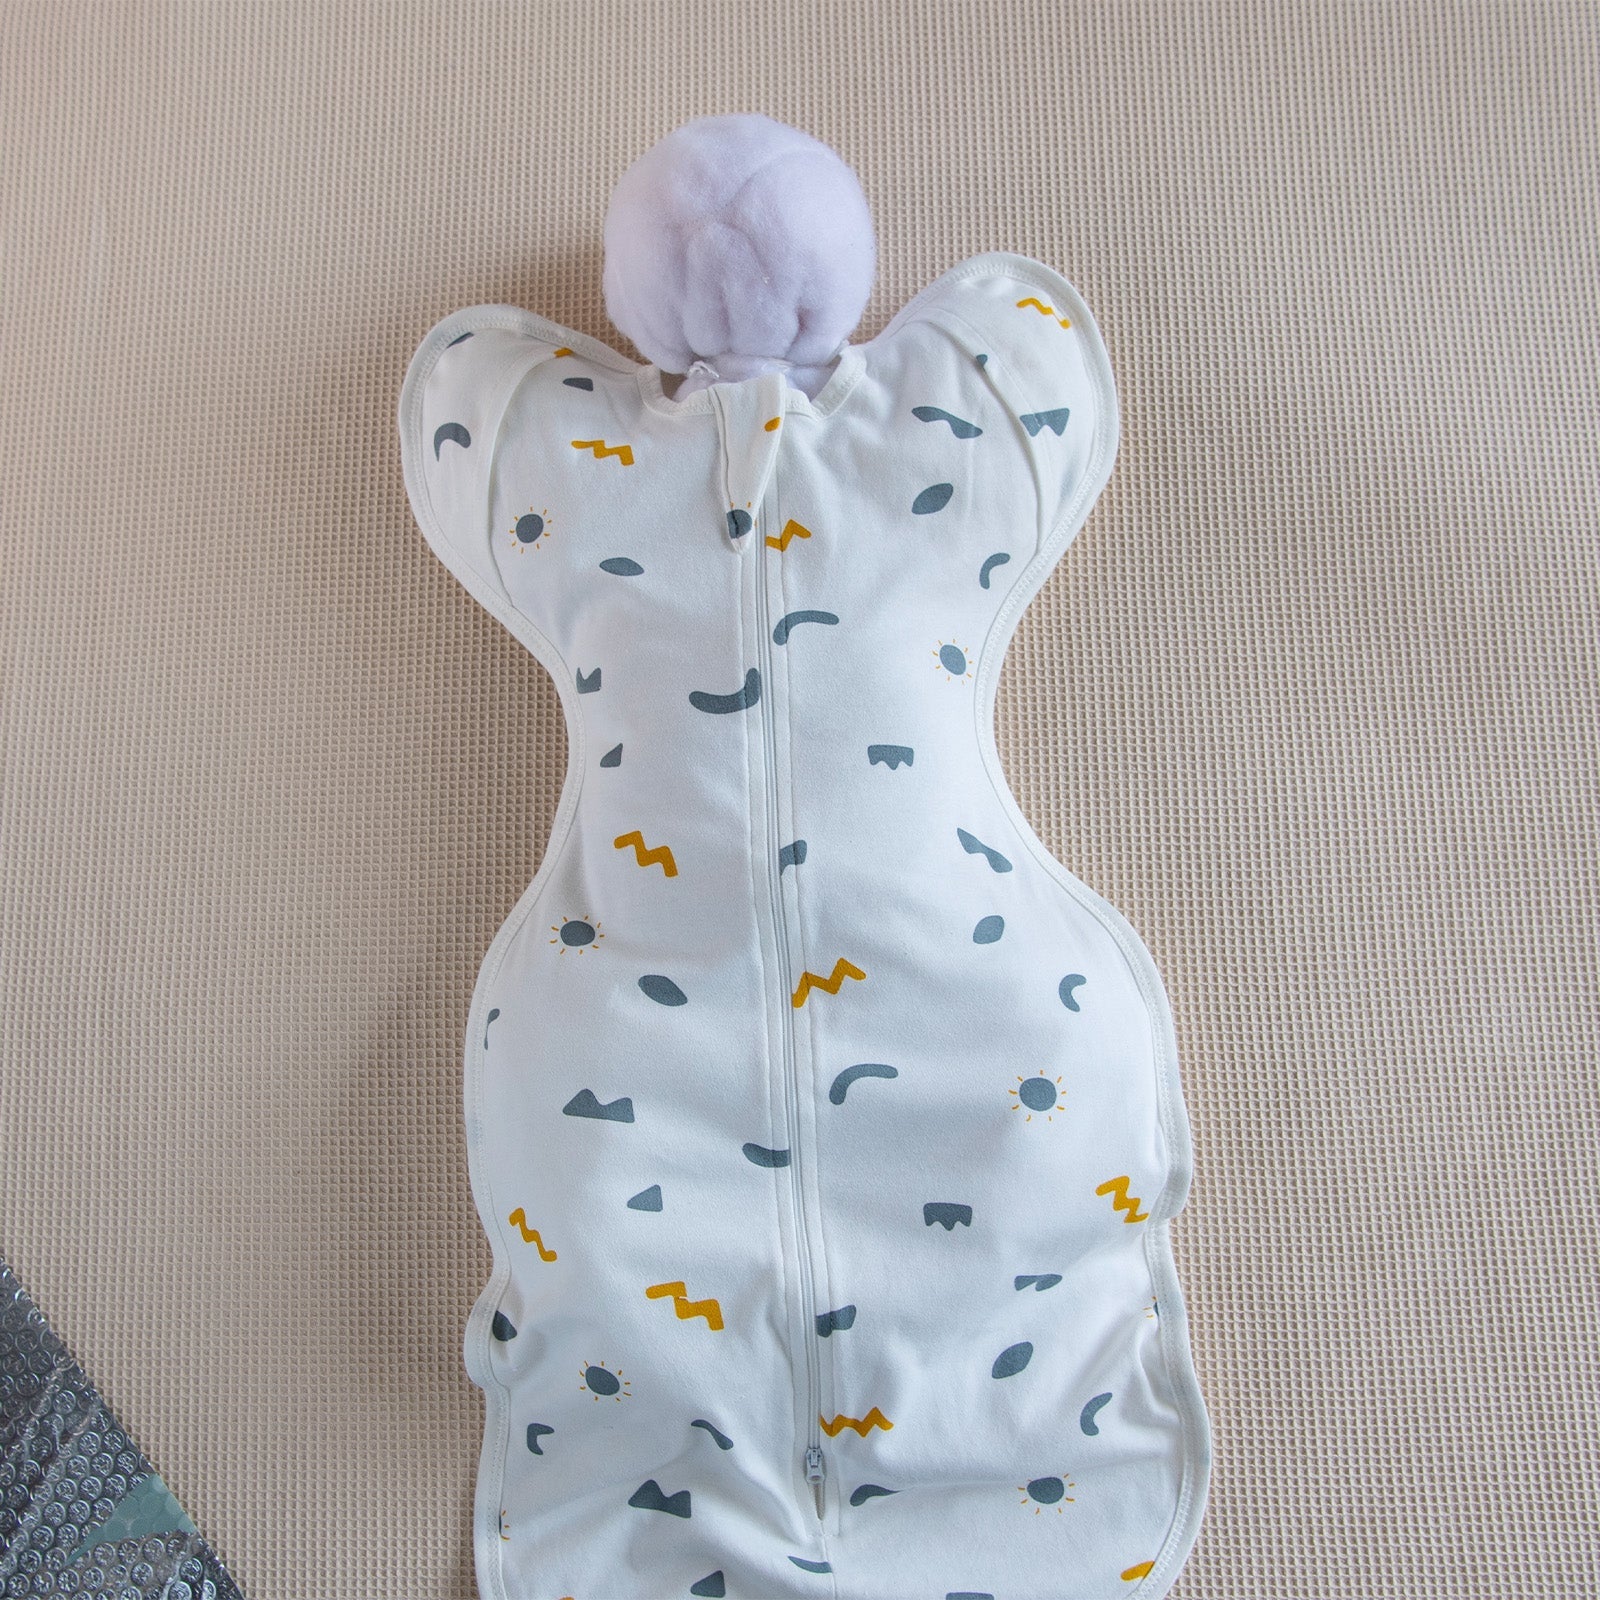 Tiny cuddling Sleepsack Swaddle,100% Cotton, Anti-startle Design, TOG 0.5, Large, 6-9 Months, 35*80cm - babeliobaby